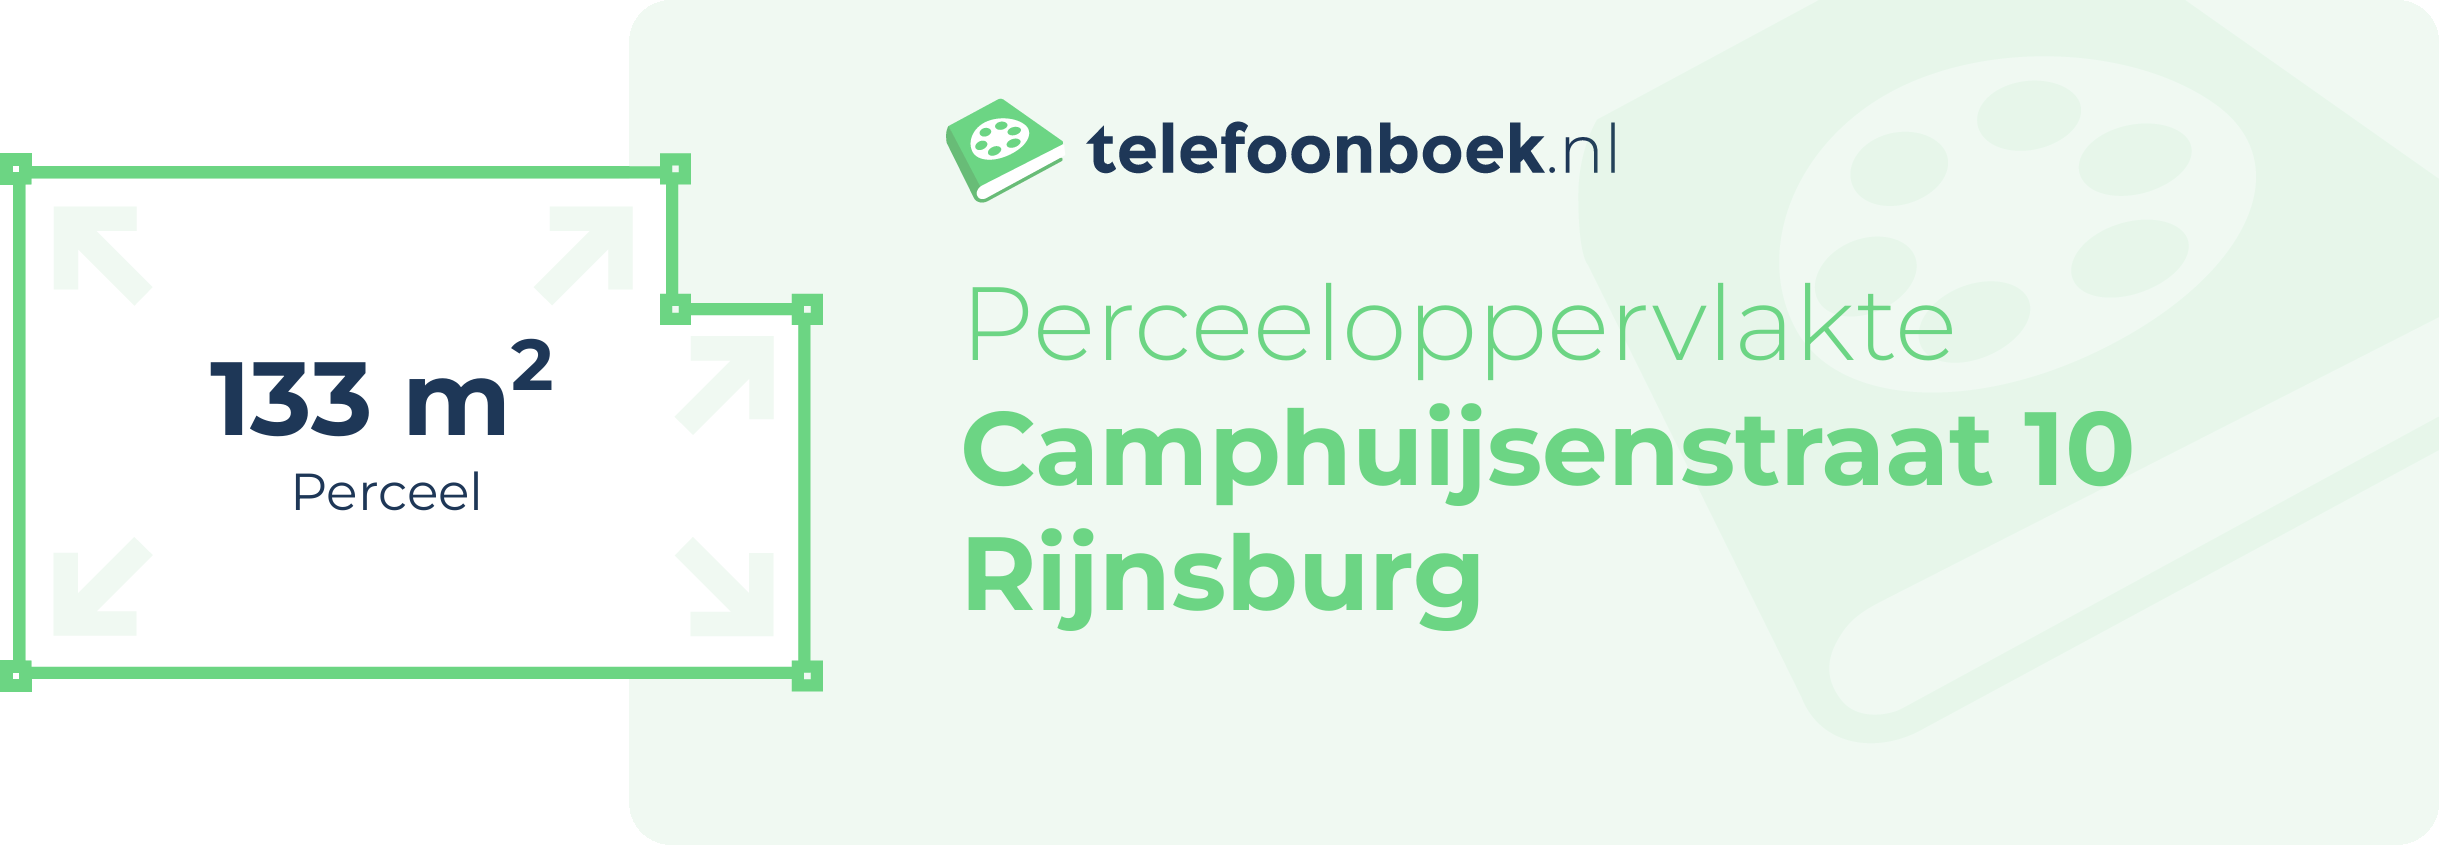 Perceeloppervlakte Camphuijsenstraat 10 Rijnsburg